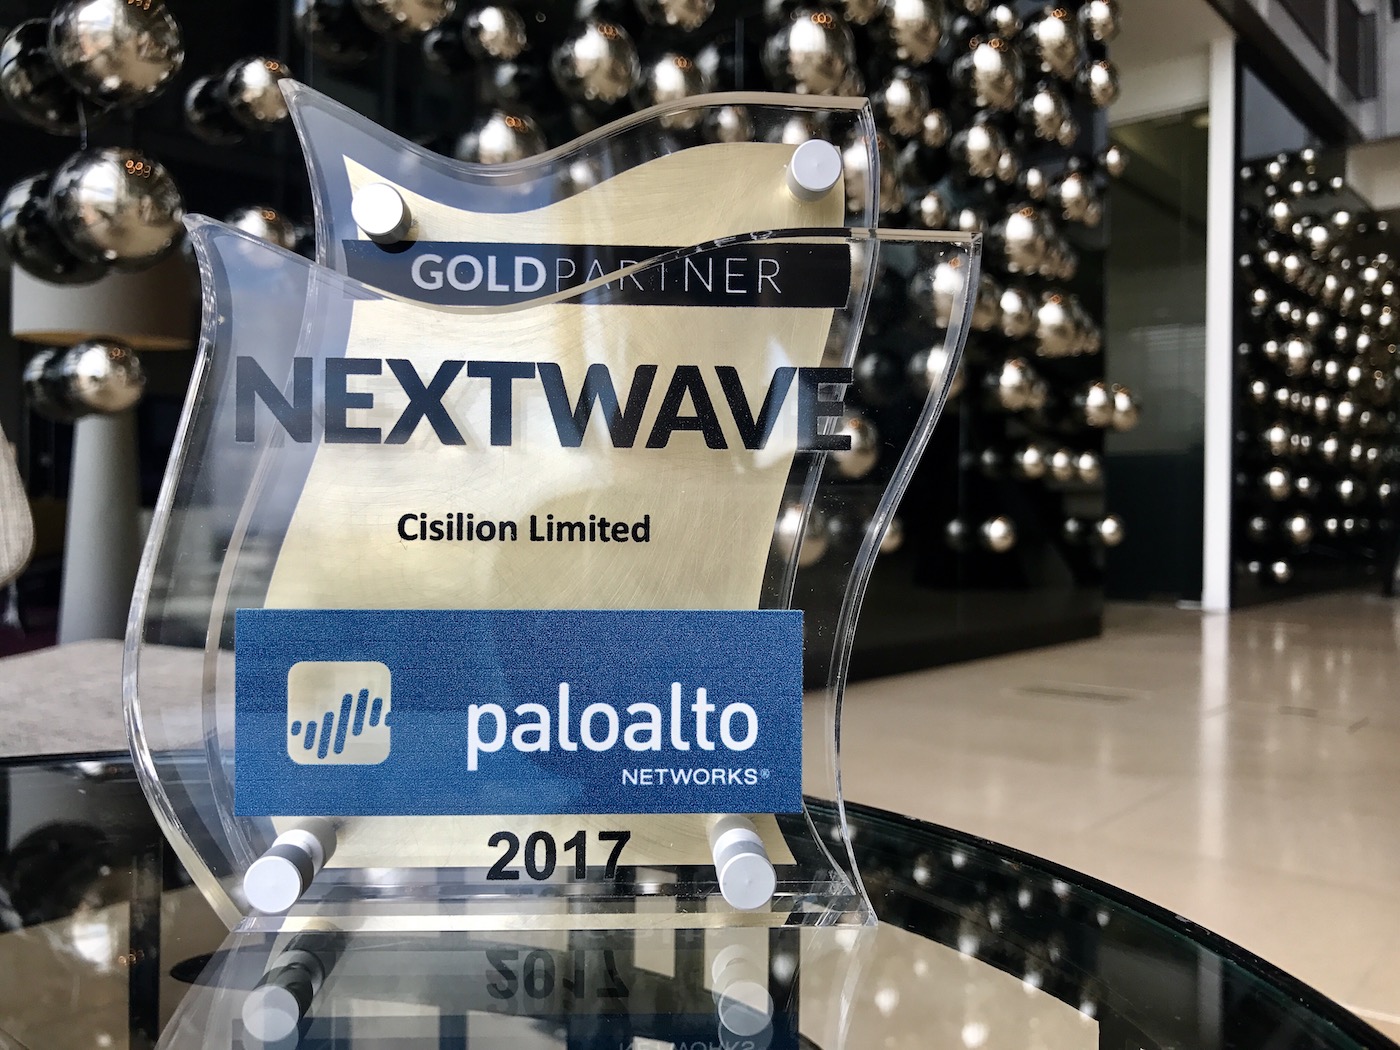 Cisilion a Palo Alto Networks NextWave Gold Partner 2017